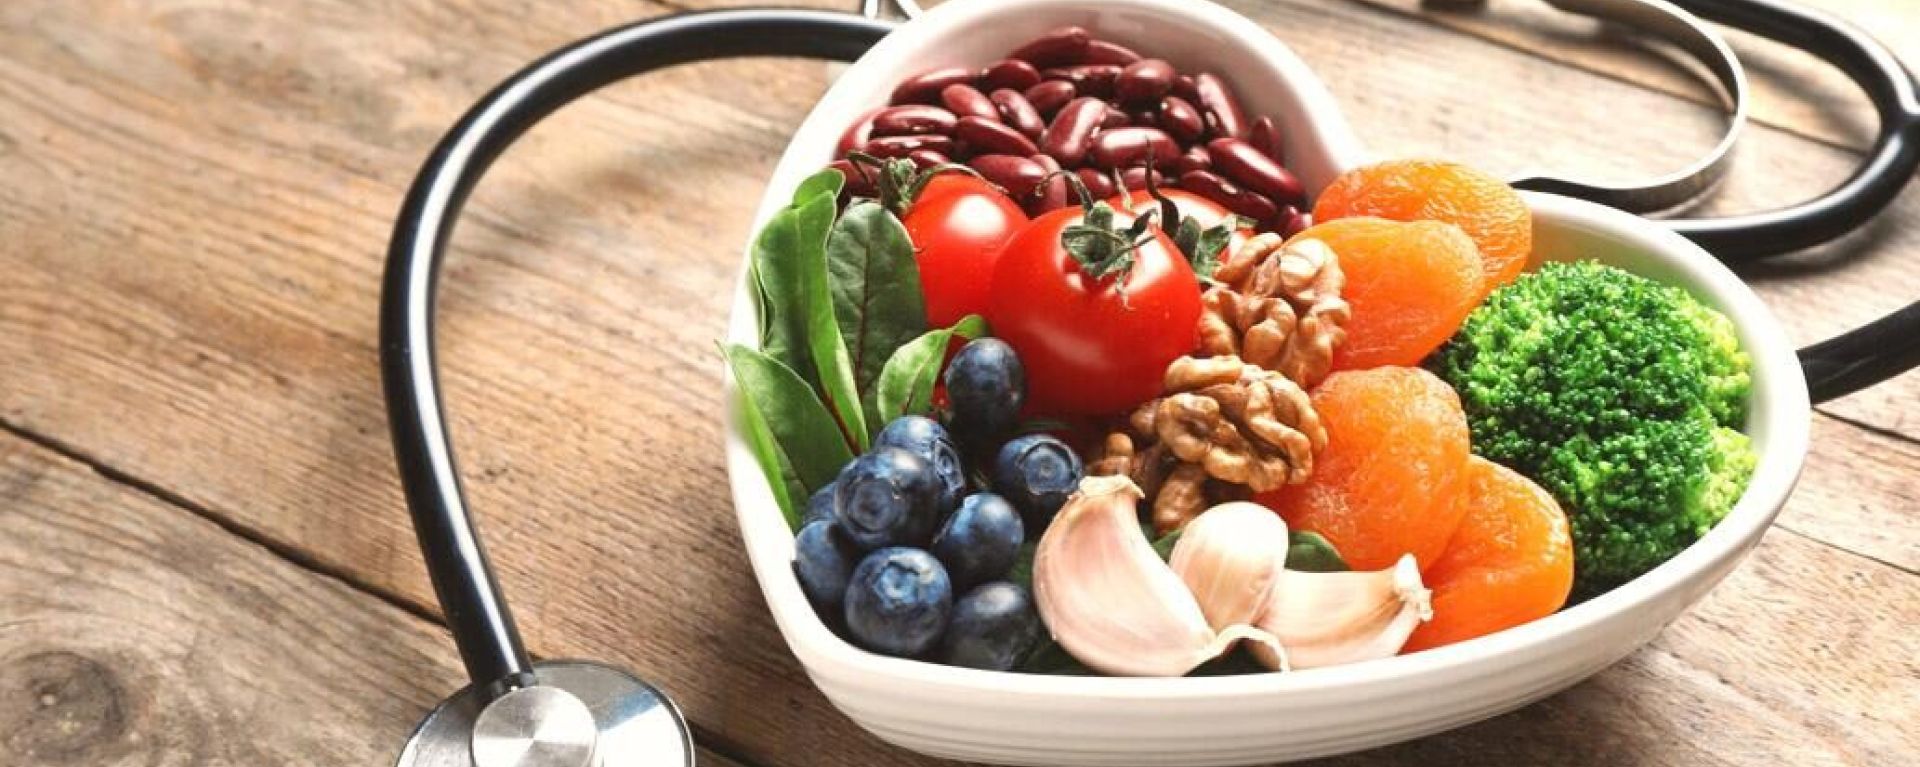 Польза пищевых антиоксидантов для здоровья